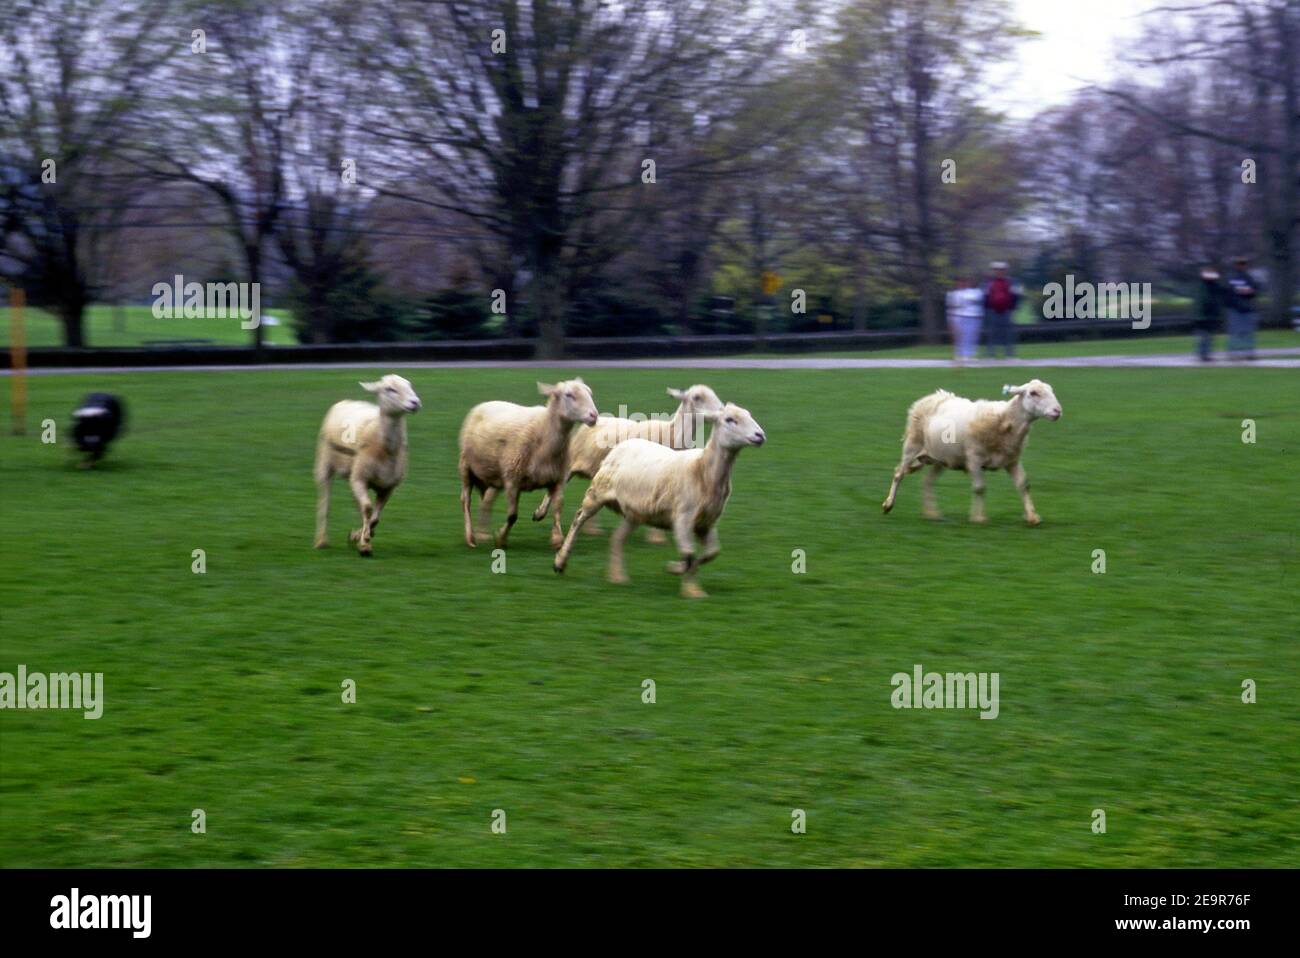 Sheep herding demonstartion oat the Farmer's Museum in Cooperstown, New York Stock Photo